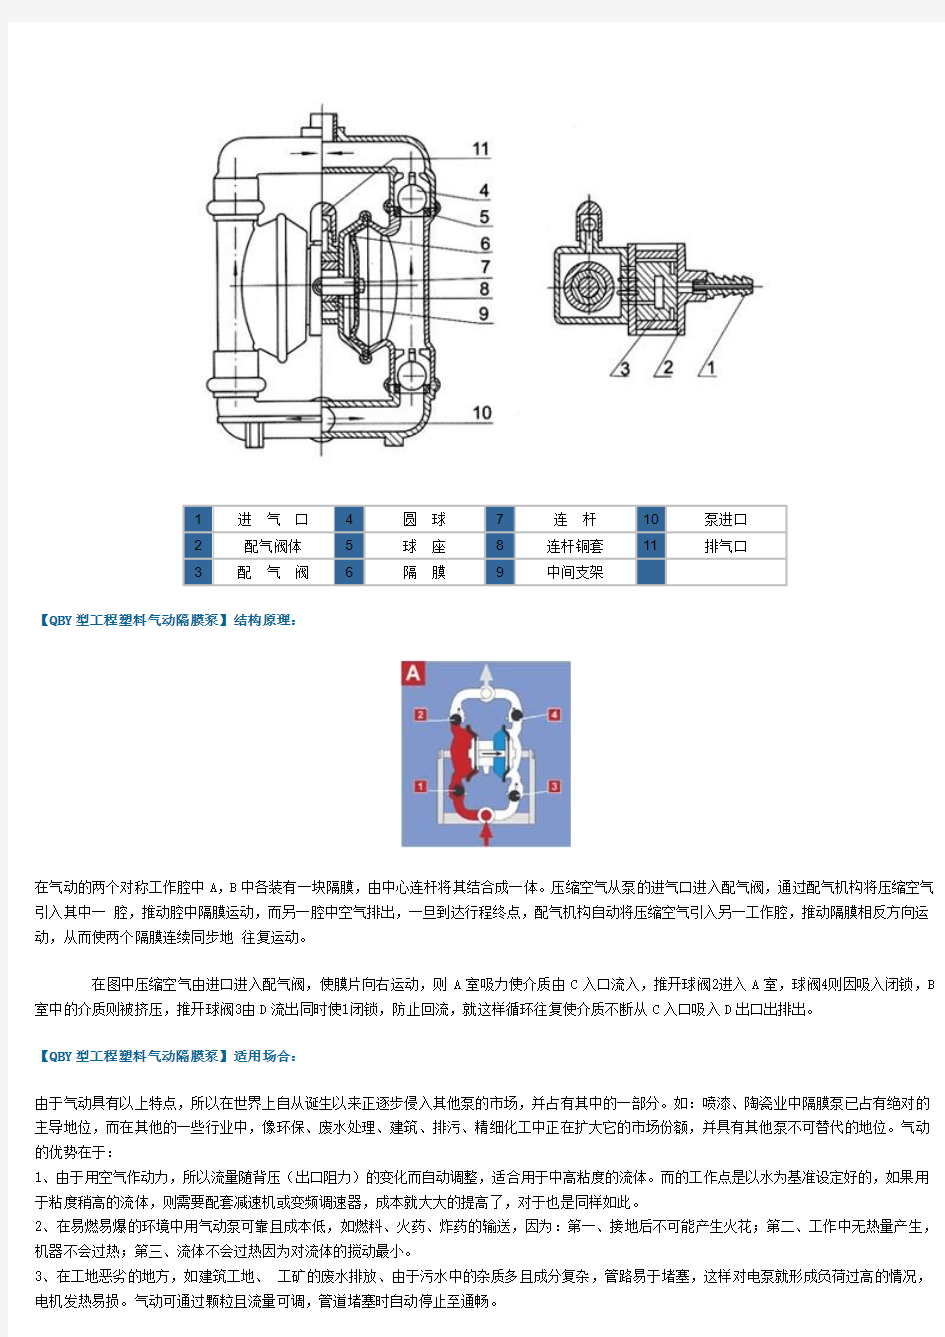 工程塑料气动隔膜泵型号及参数